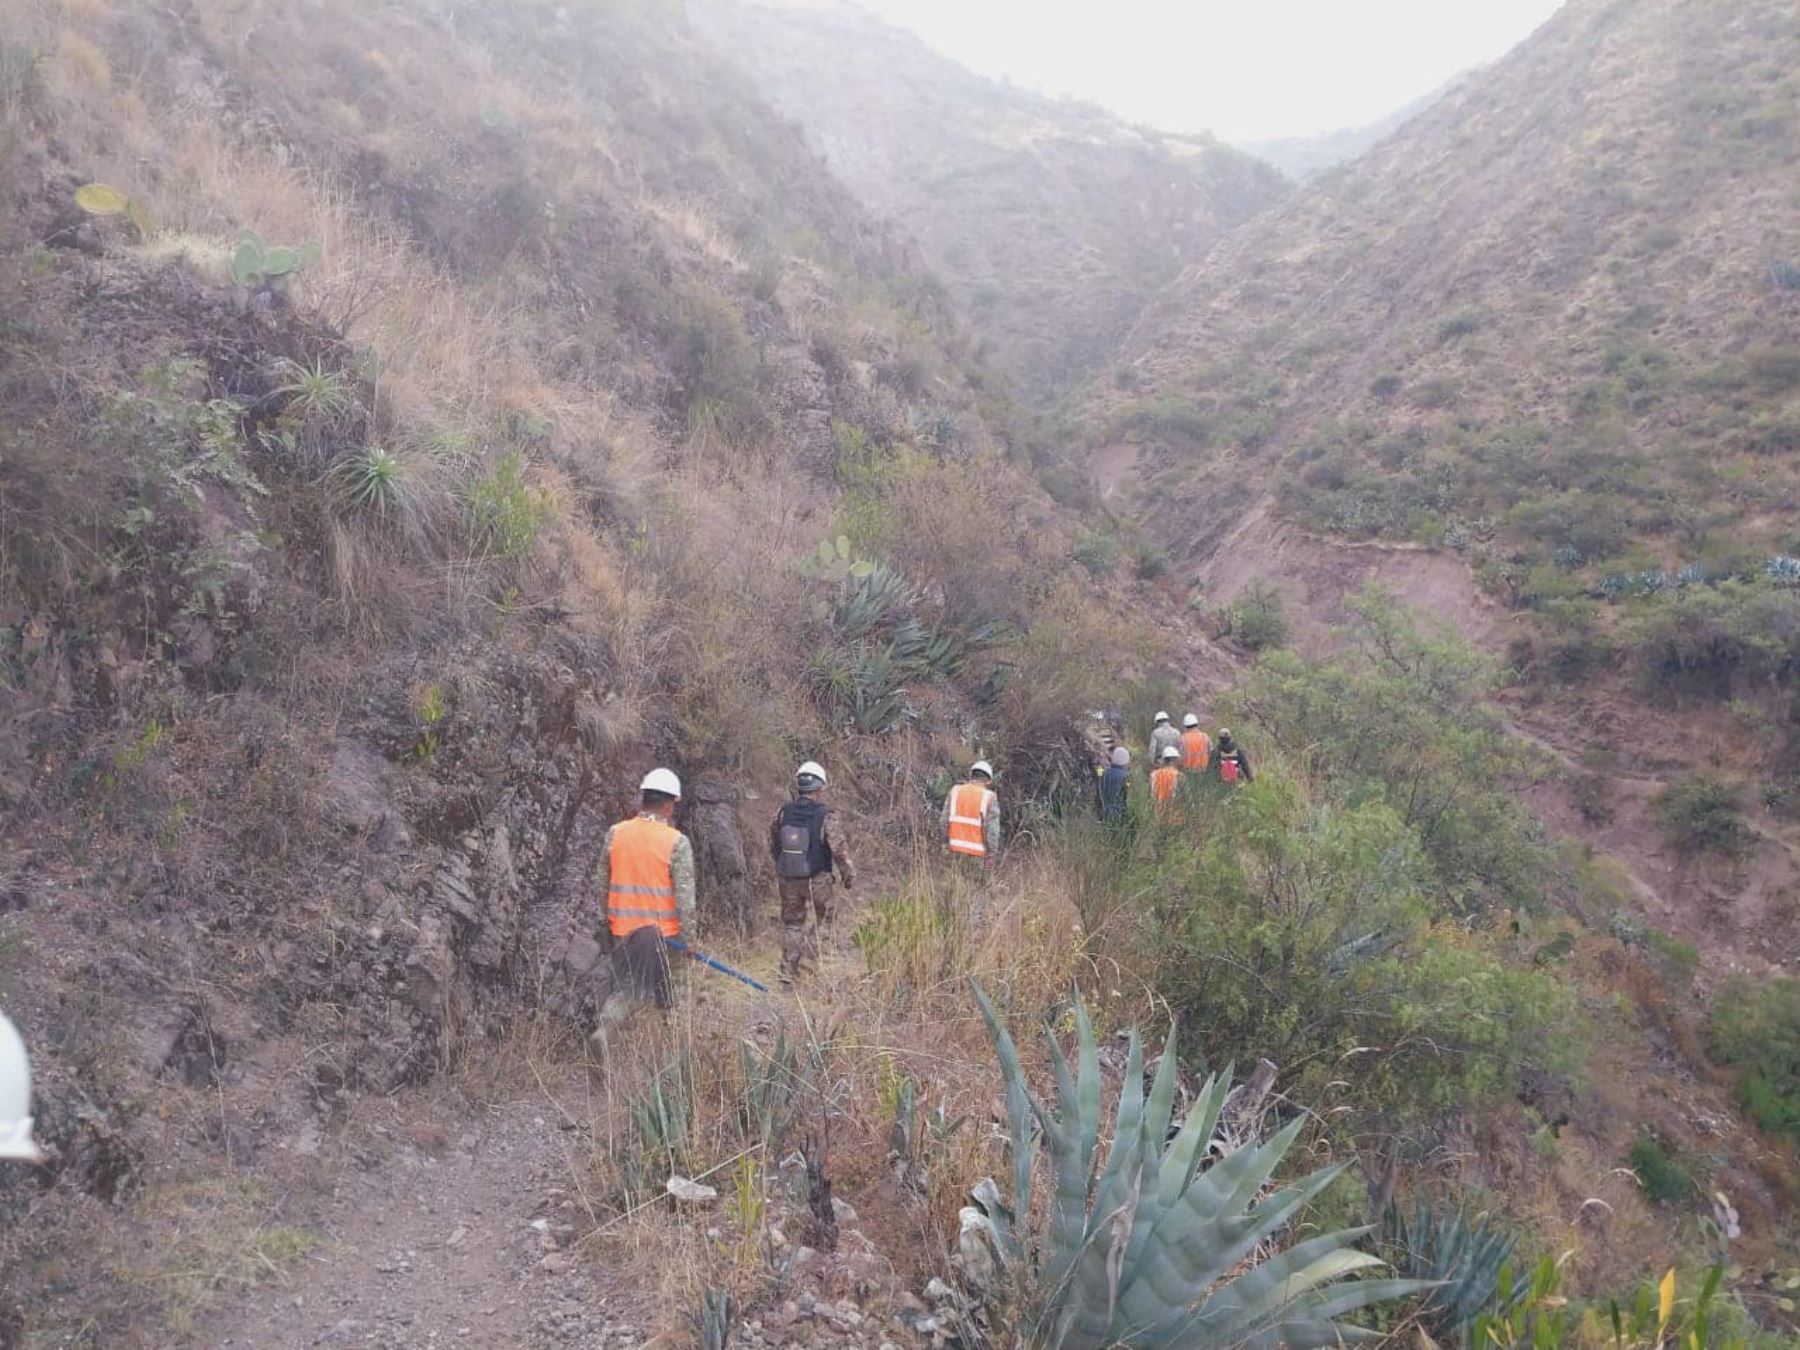 Brigadas conformadas por miembros del Ejército, Policía Nacional, Bomberos y de otros sectores lograron sofocar incendio forestal en la provincia de Vilcas Huamán, en Ayacucho. ANDINA/Difusión